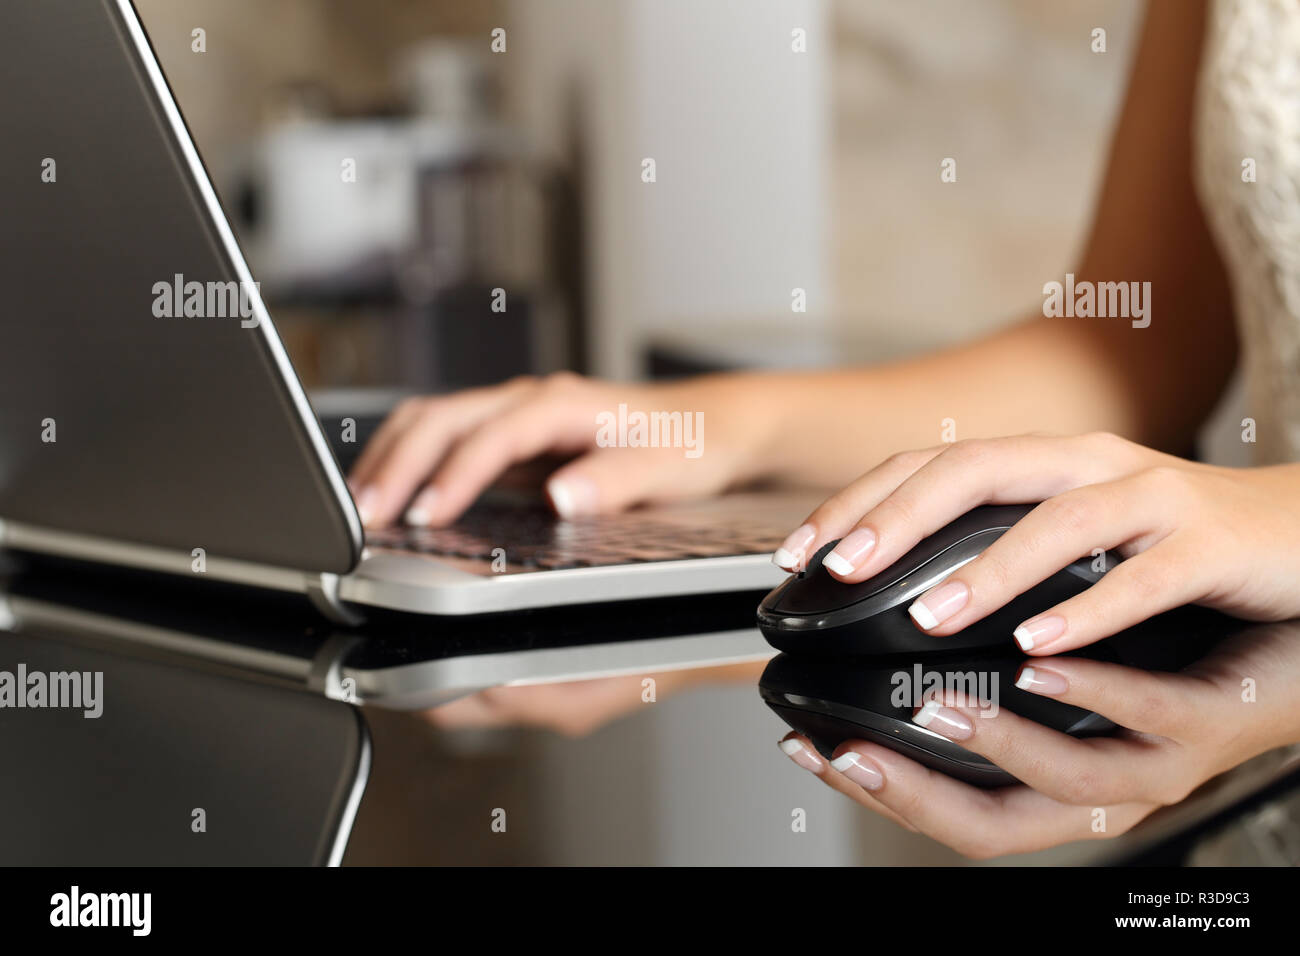 Donna mani di lavorare con un computer portatile e un mouse Foto Stock